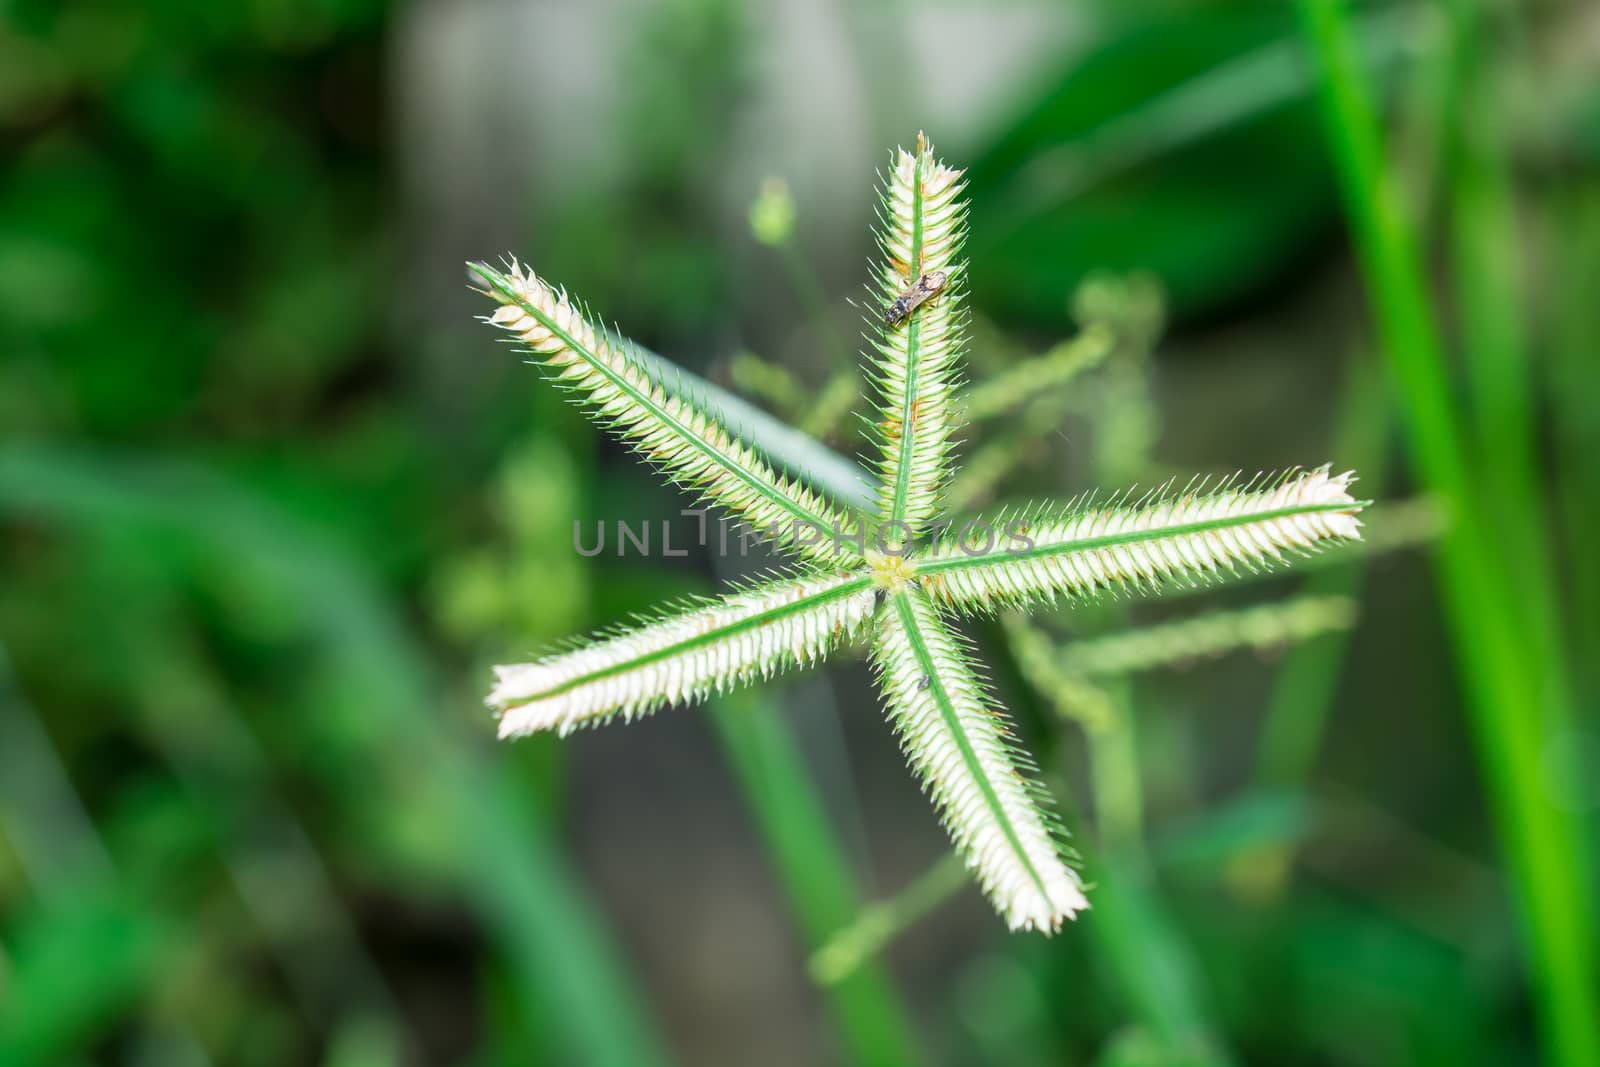 the beautiful unseen local Thai star grass flower under sunlight